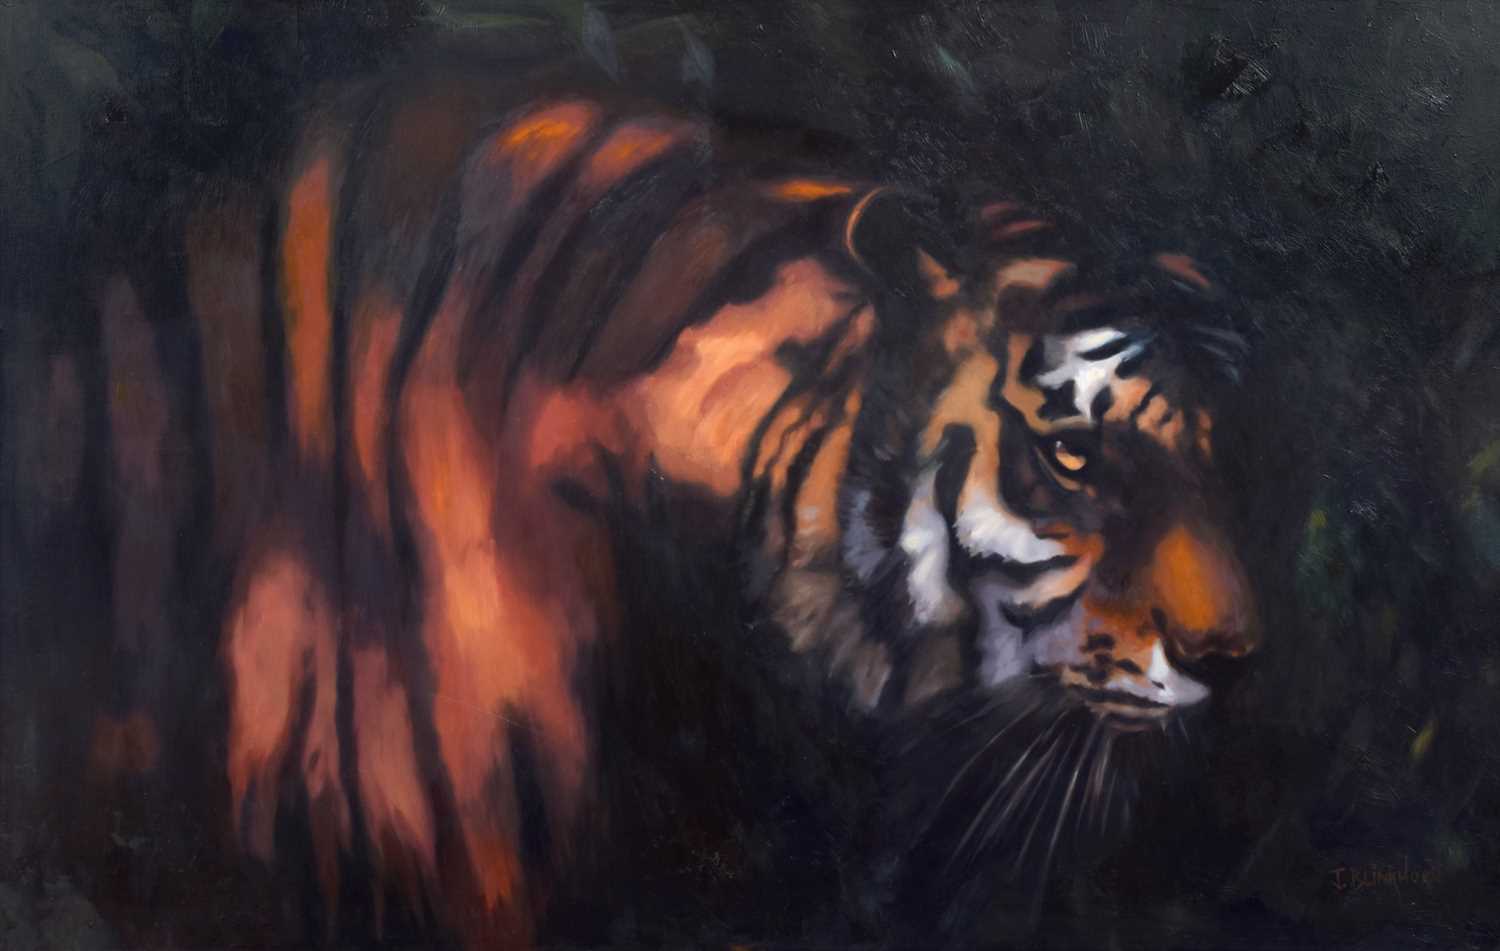 James Blinkhorn (British 1966-) Tiger